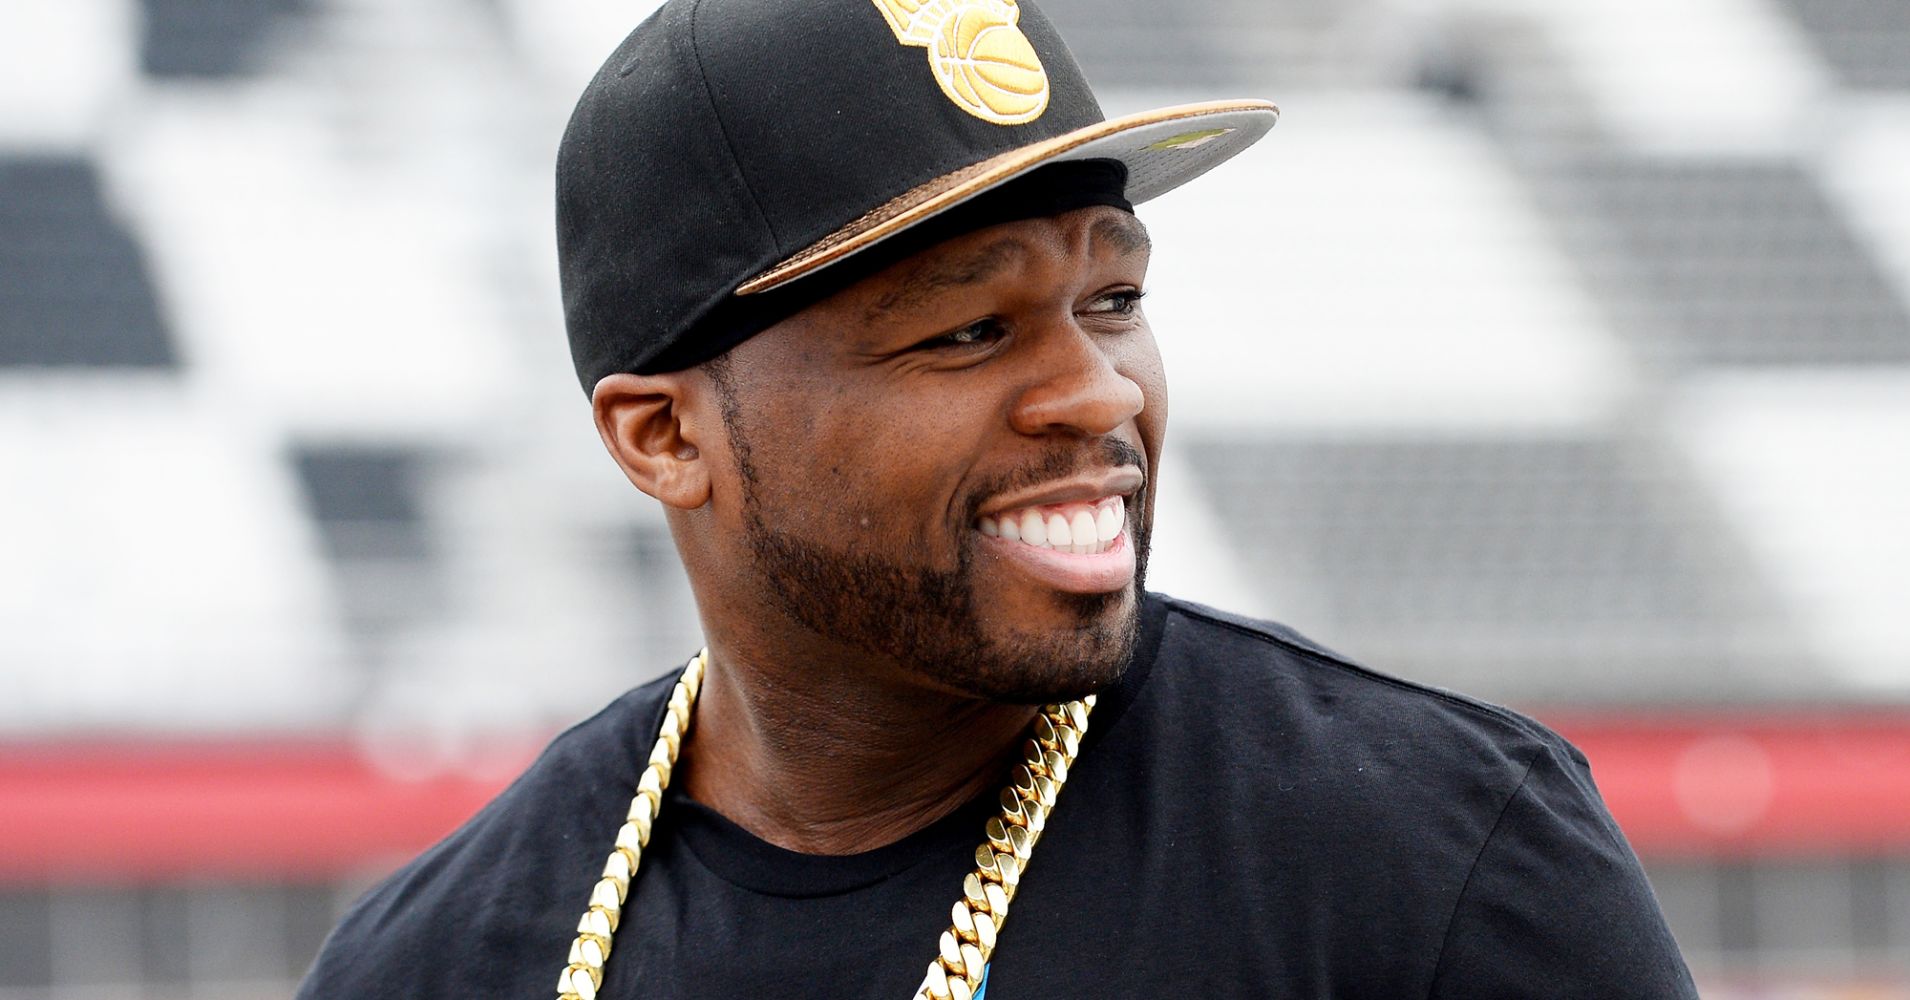 Υψηλόβαθμος αστυνομικός είπε σε μέλη της ομάδας του να… πυροβολήσουν τον 50 Cent μόλις τον δουν